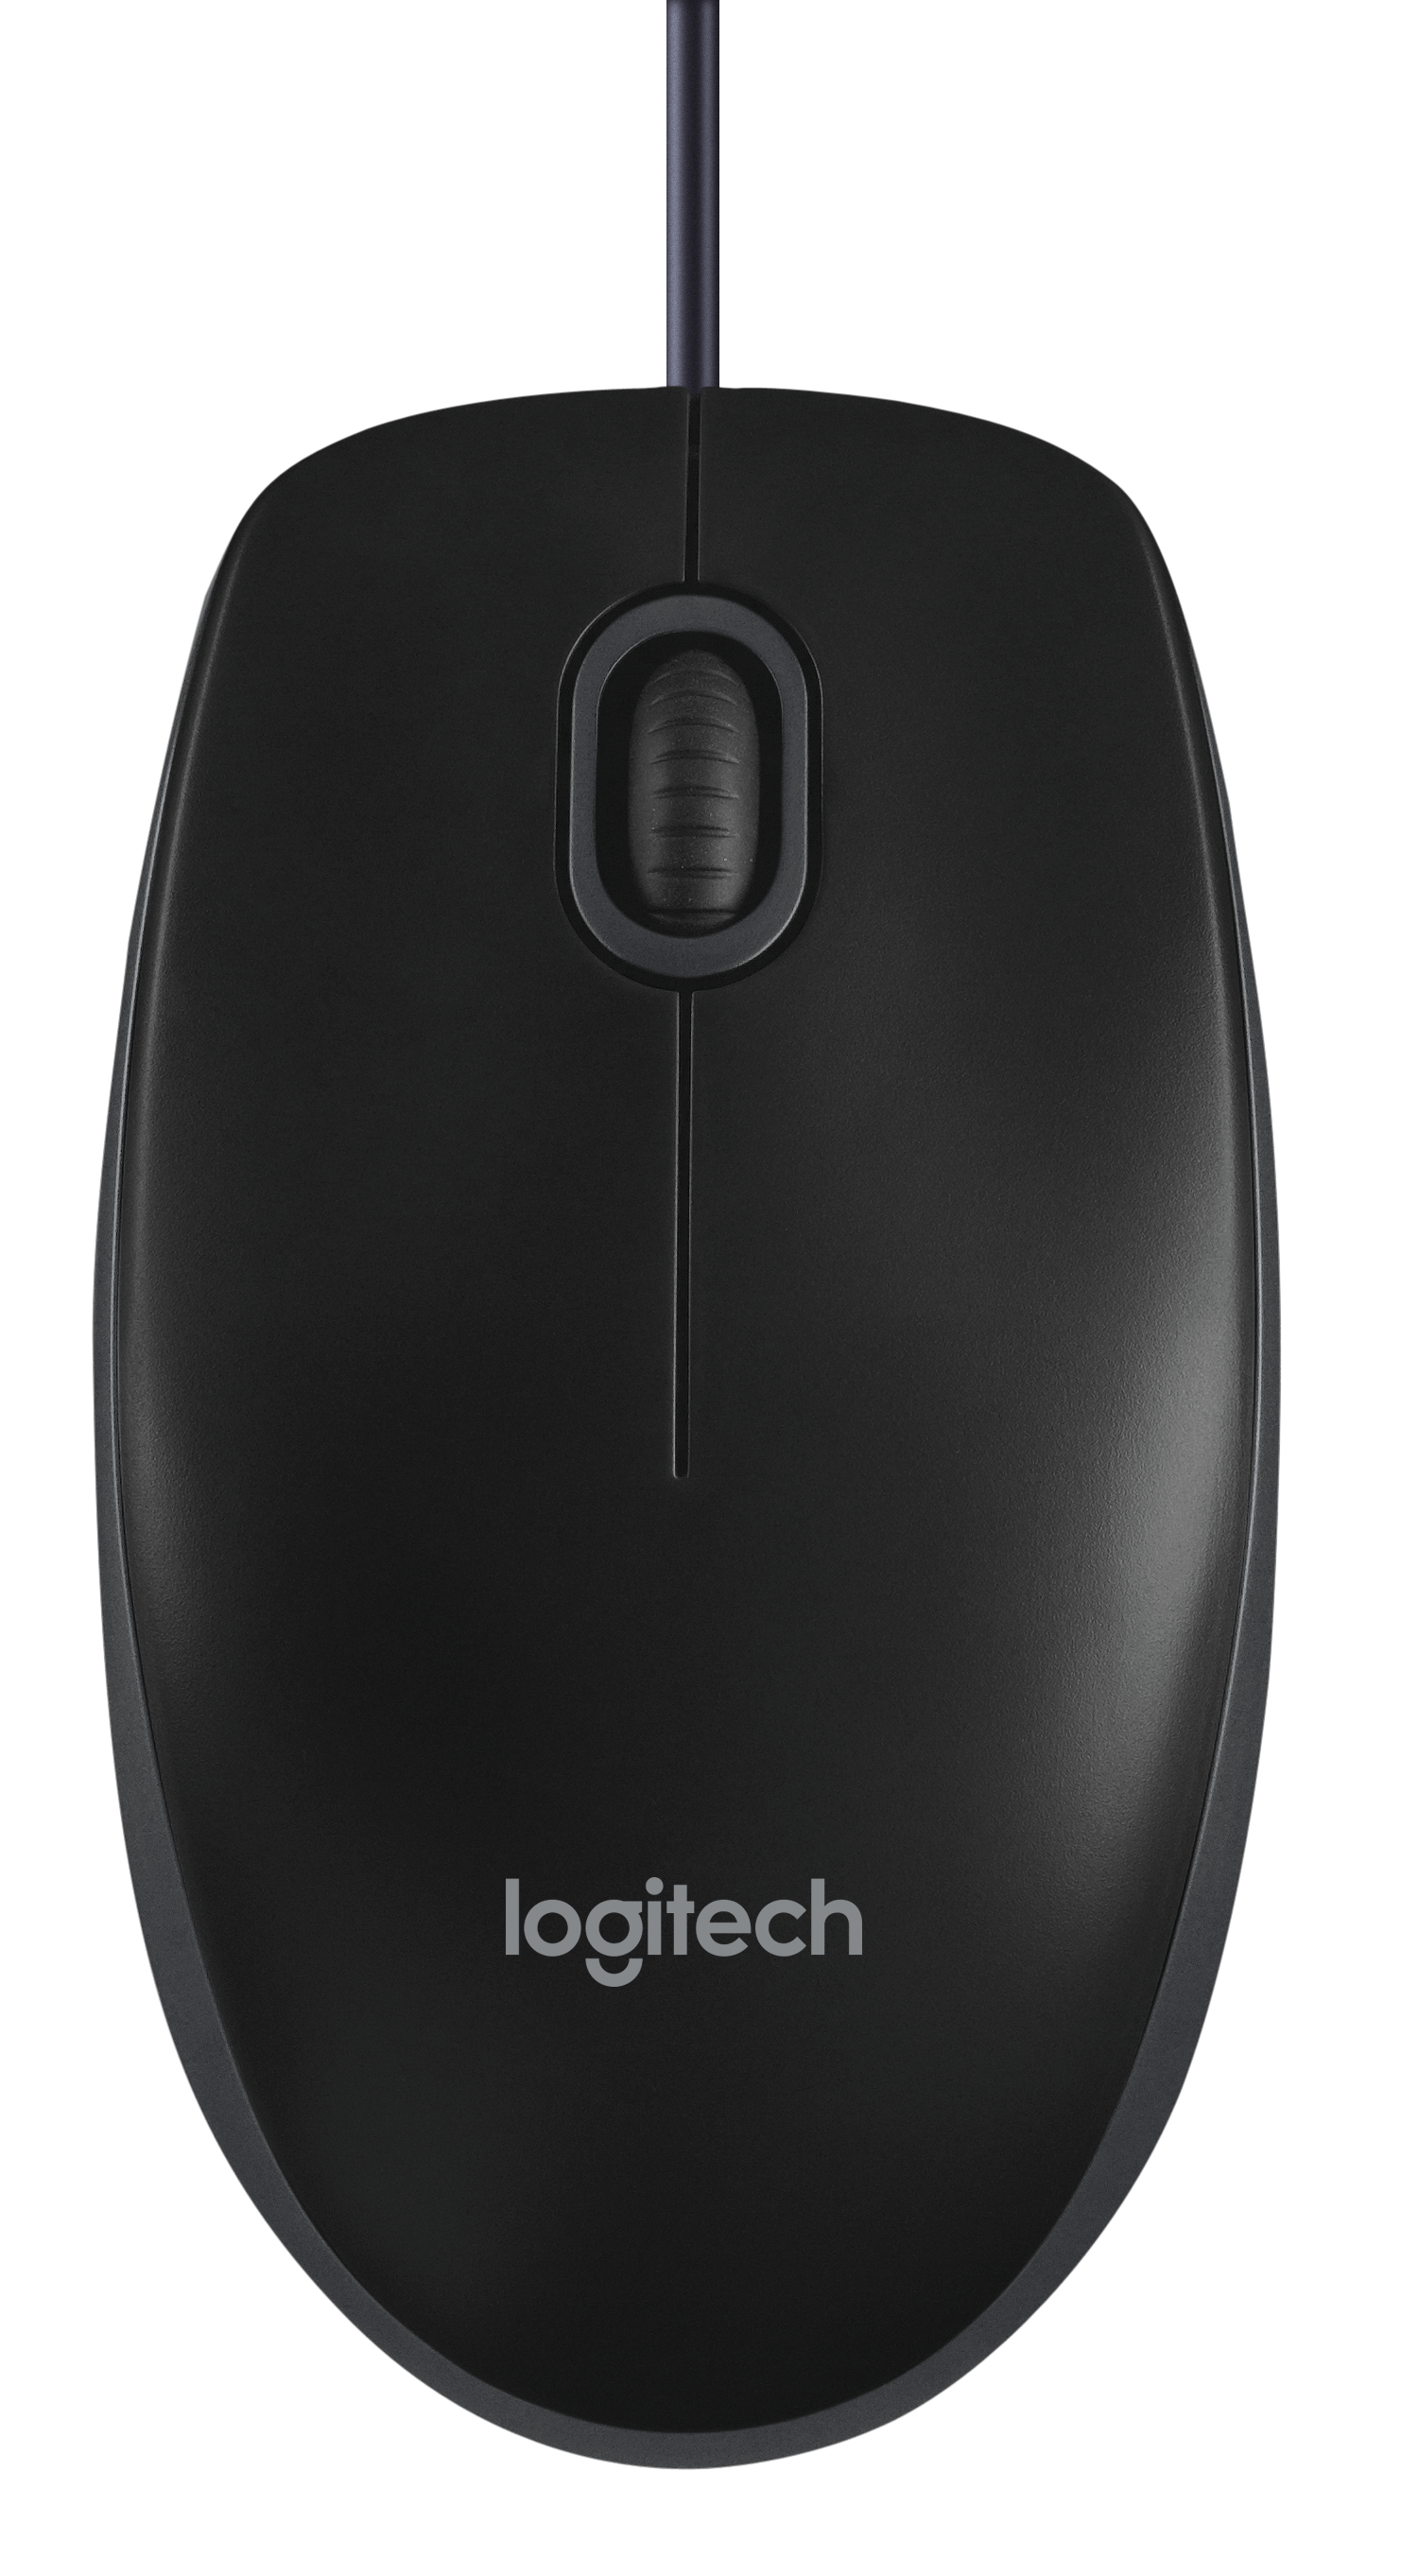 Log910-003357  Logitech B100 Optical Usb Mous Mouse                                                        - UF01